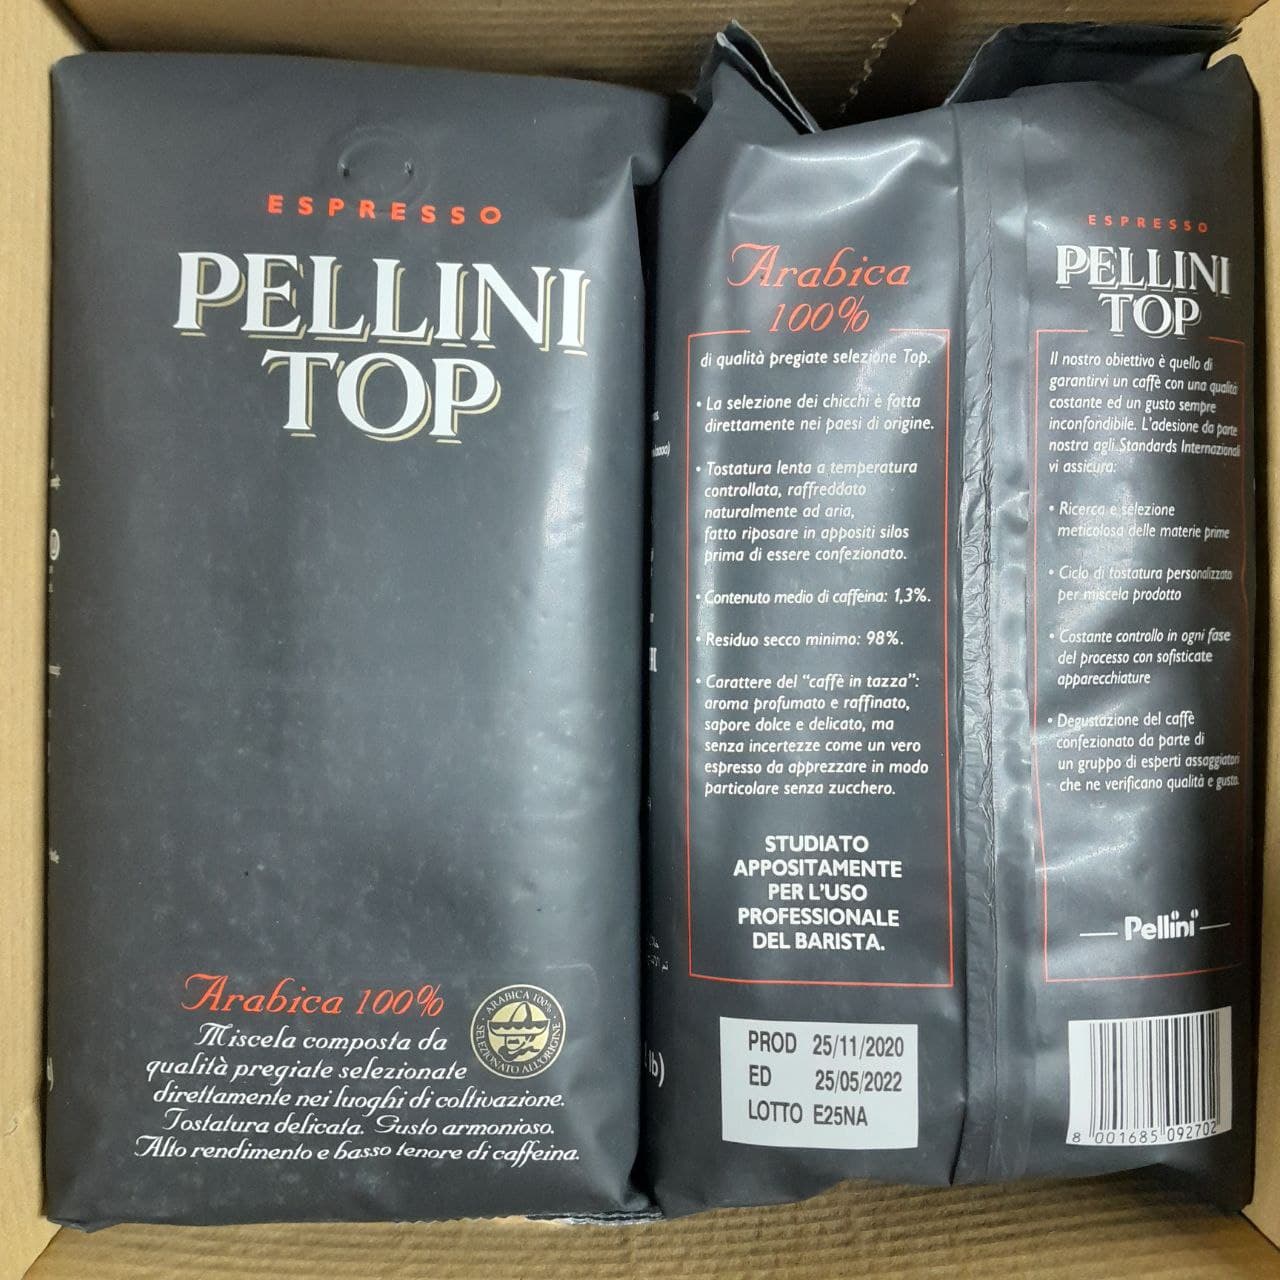 Pupiņu kafija "PELLINI" Top